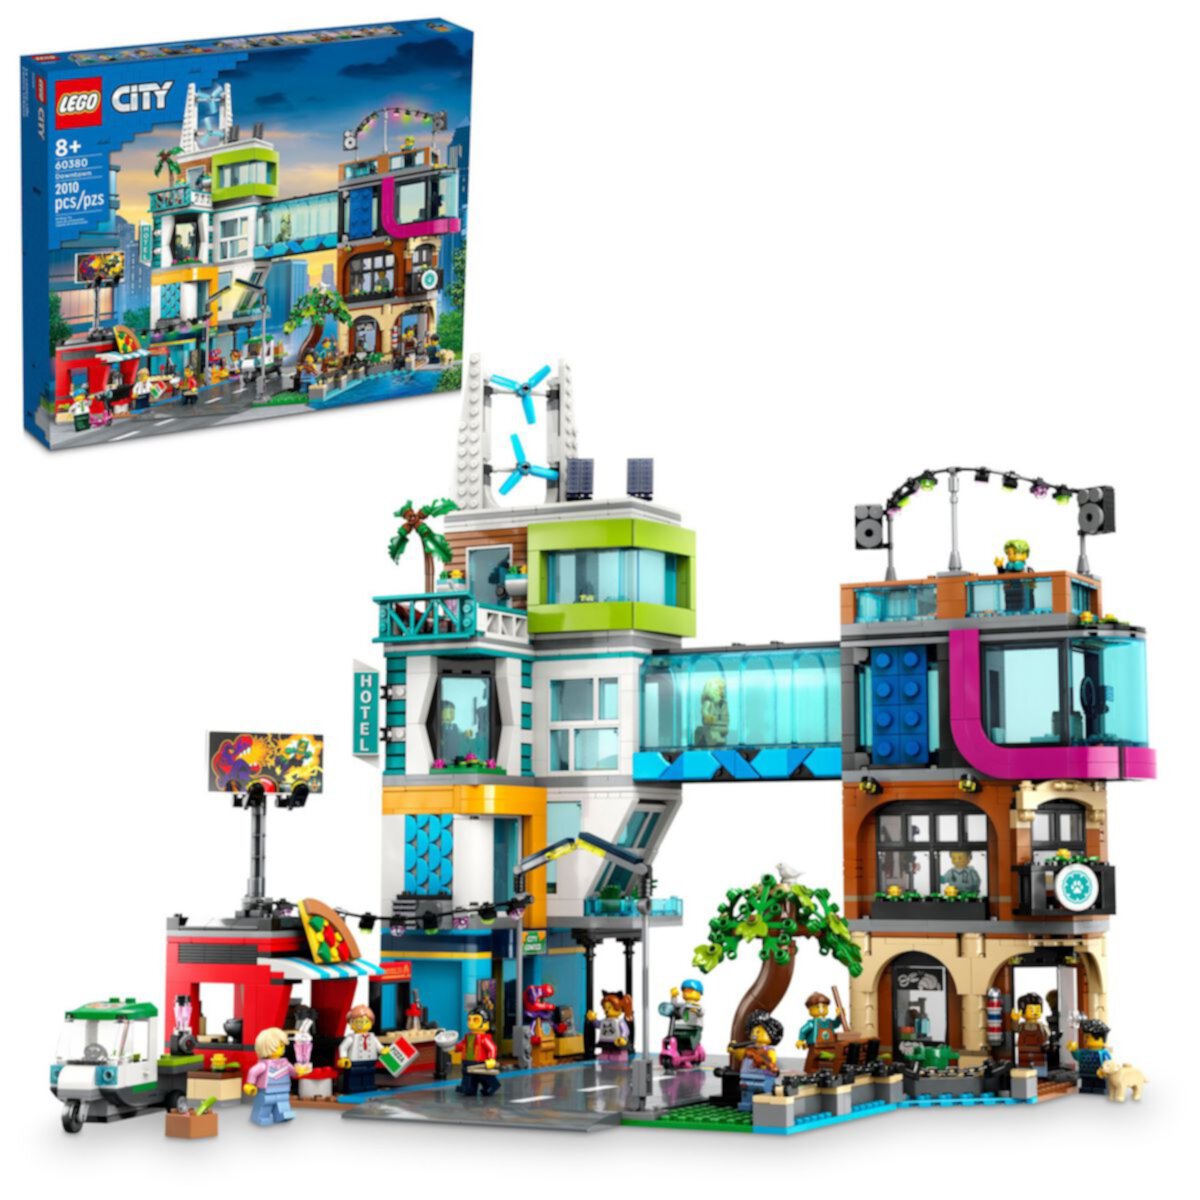 LEGO City Центр города Набор Модульных Зданий 60380 (2,010 деталей) Lego